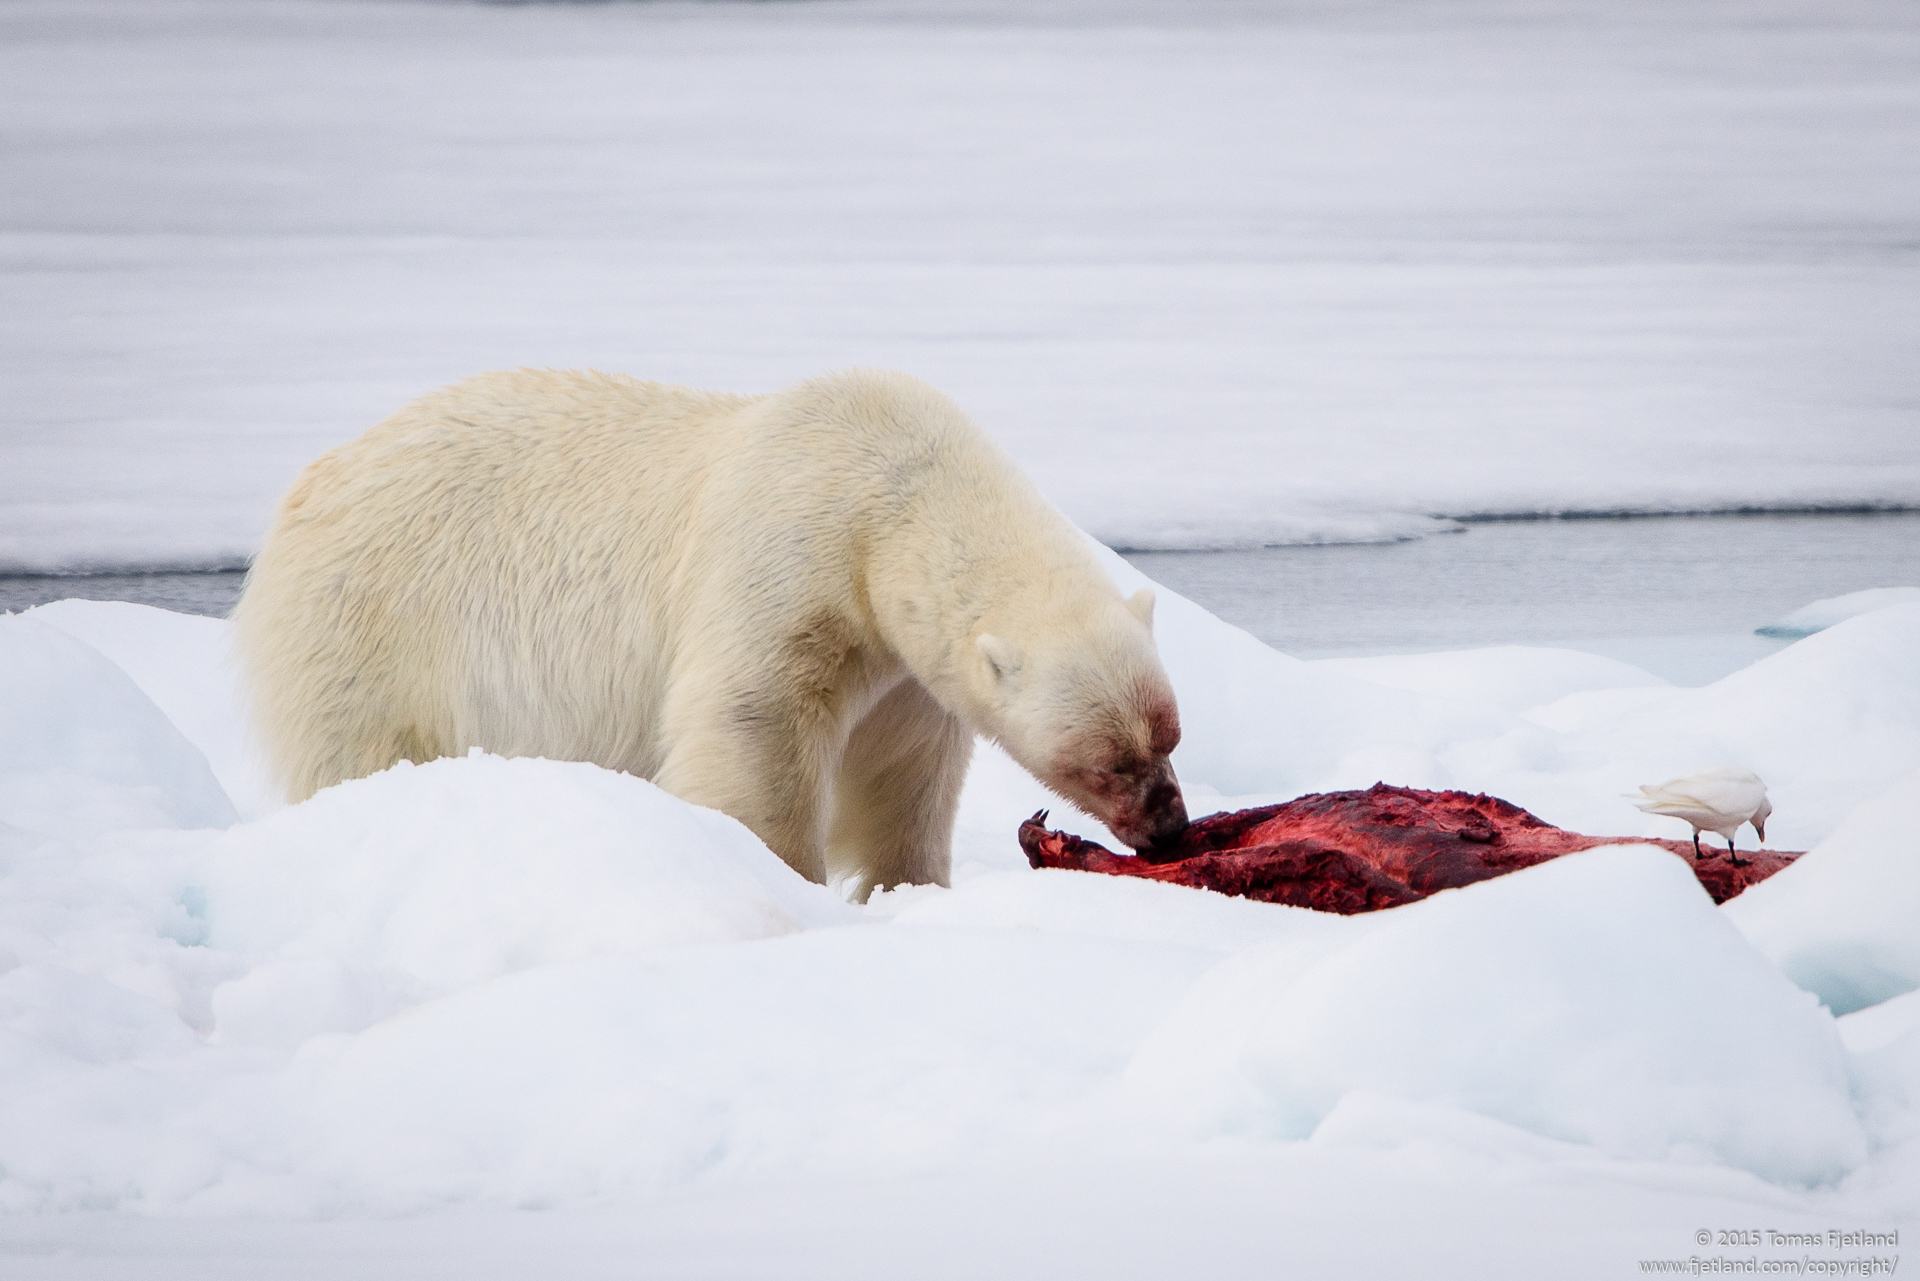 Polar bear and Ivory gull feeding on a seal carcass